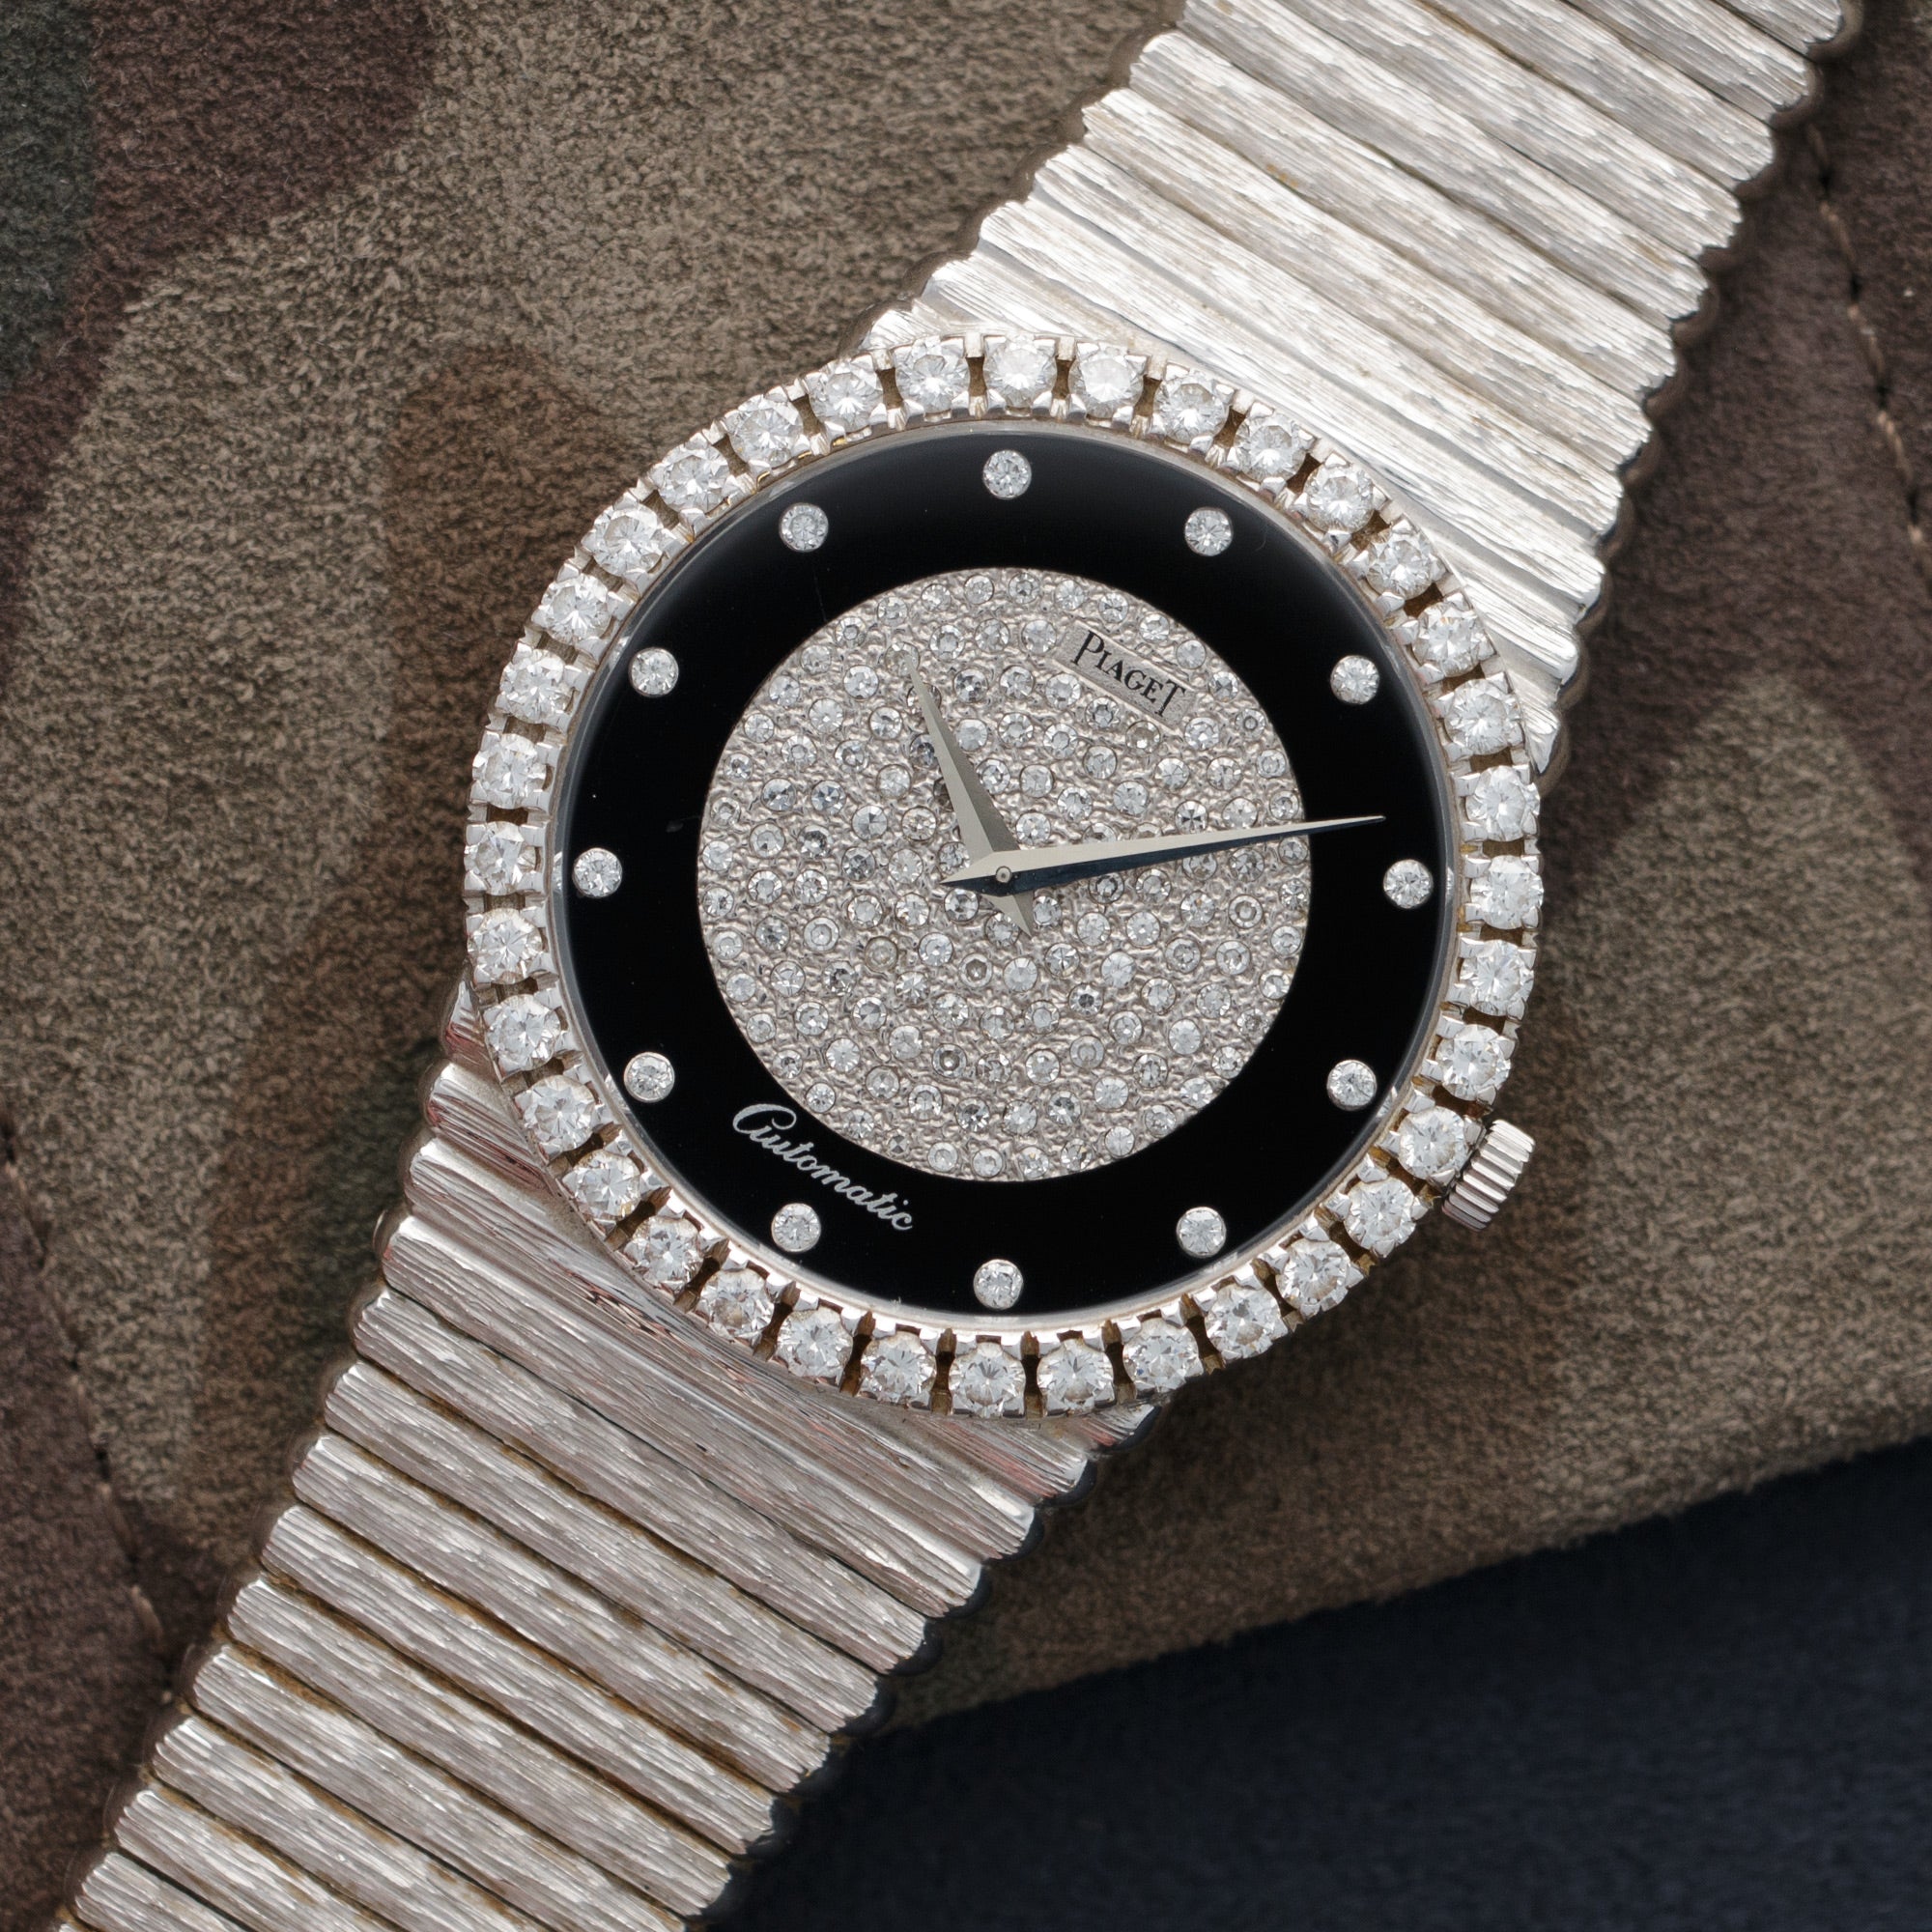 Piaget - Piaget White Gold Diamond & Onyx Automatic Watch - The Keystone Watches